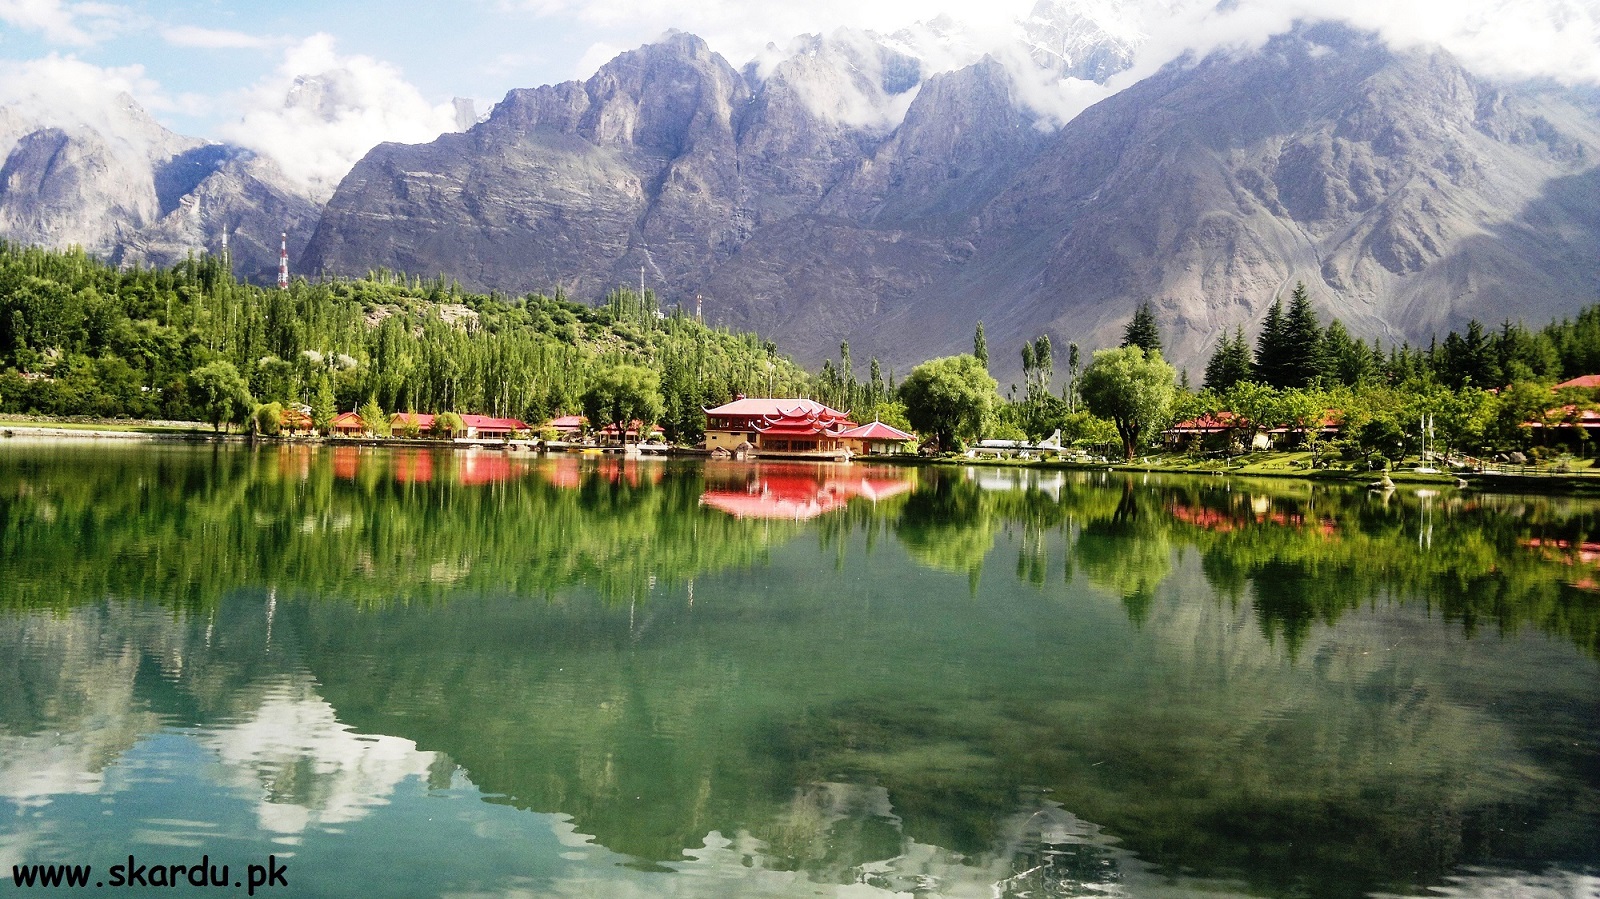 Shangrila Resort Skardu Gilgit Baltistan, beutiful place to visit